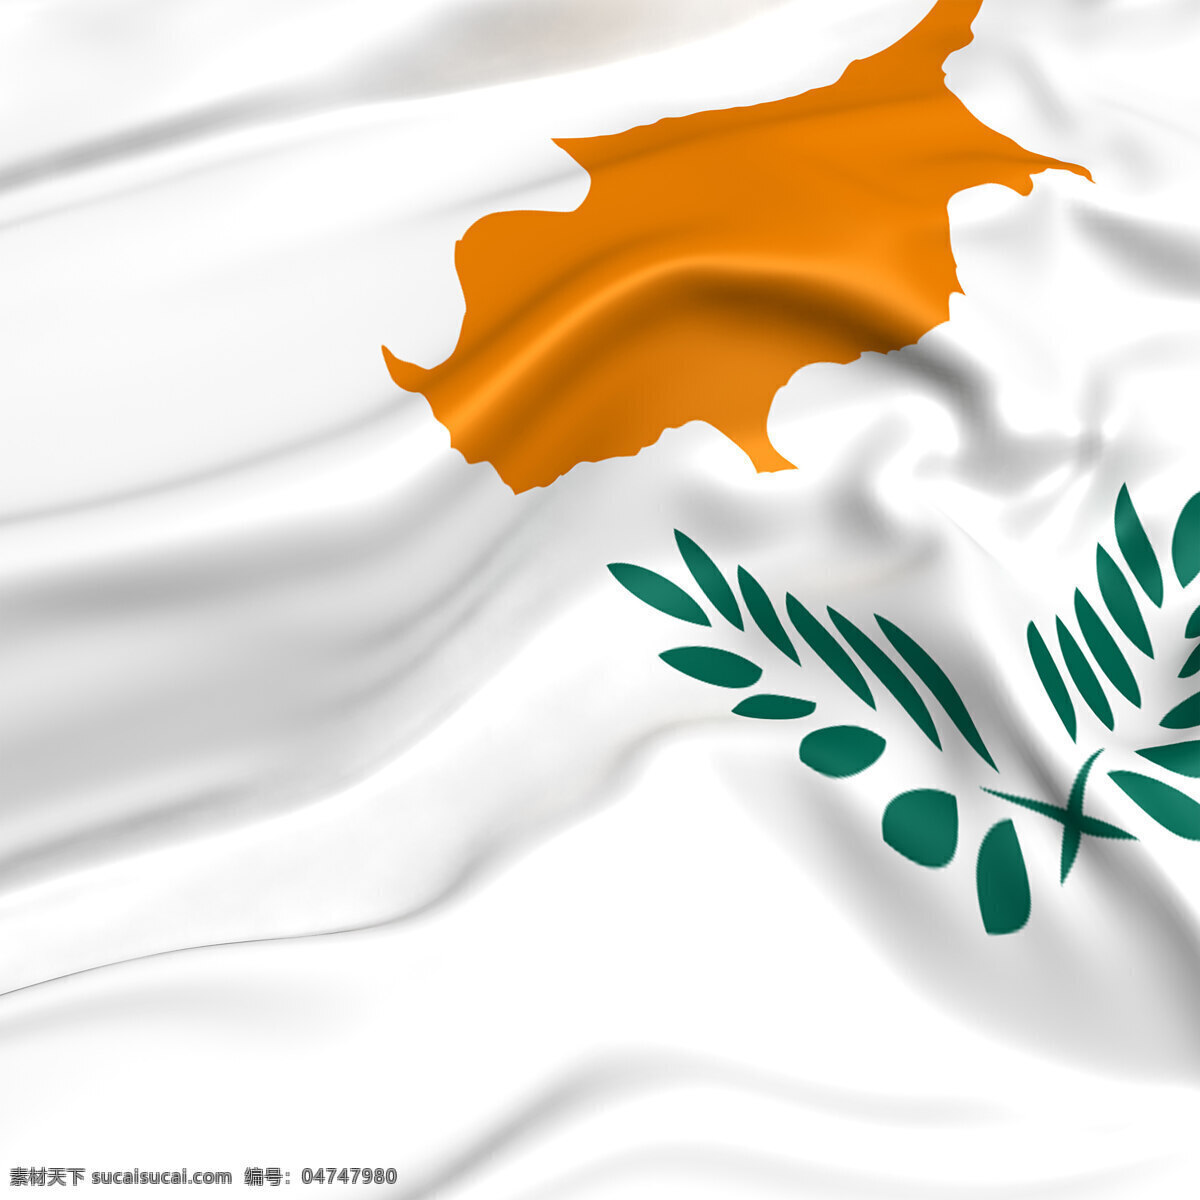 塞浦路斯 国旗 塞浦路斯国旗 风景 生活 旅游餐饮